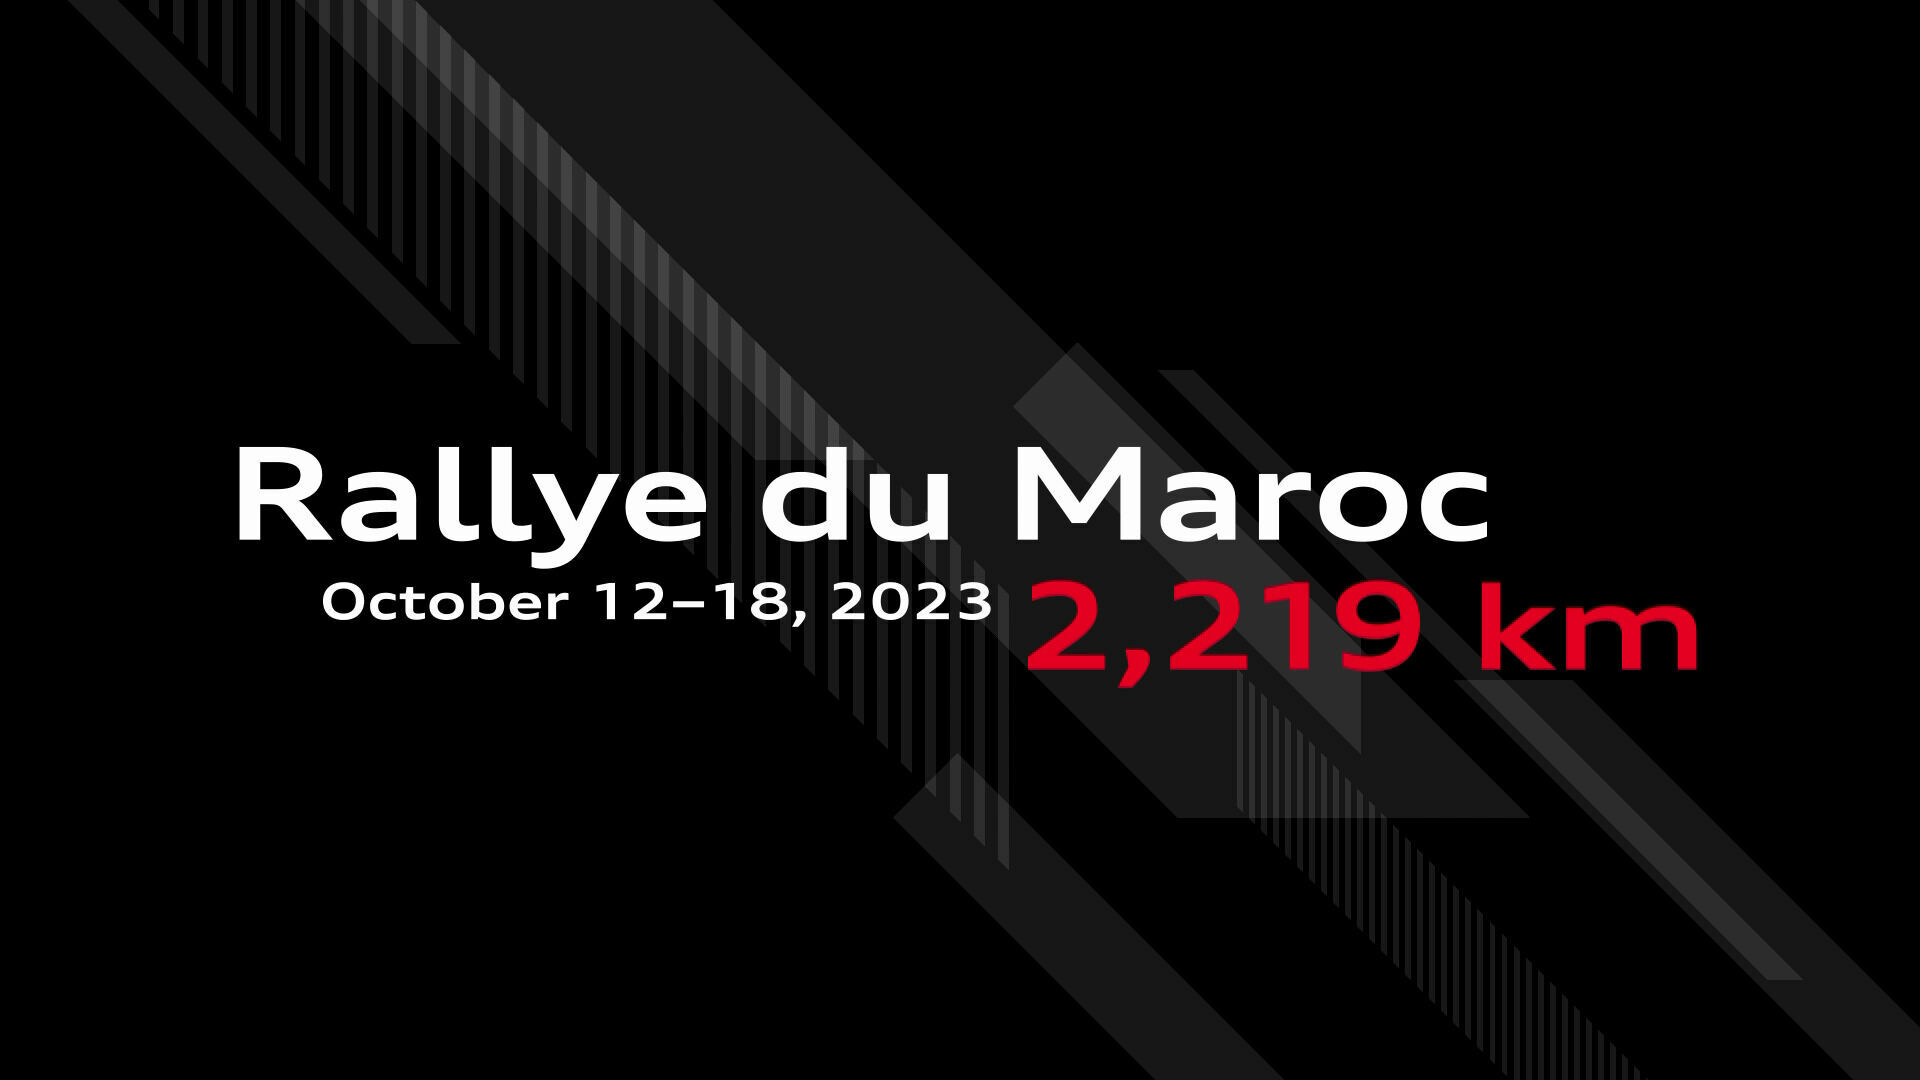 Rallye du Maroc 2023: Strecke